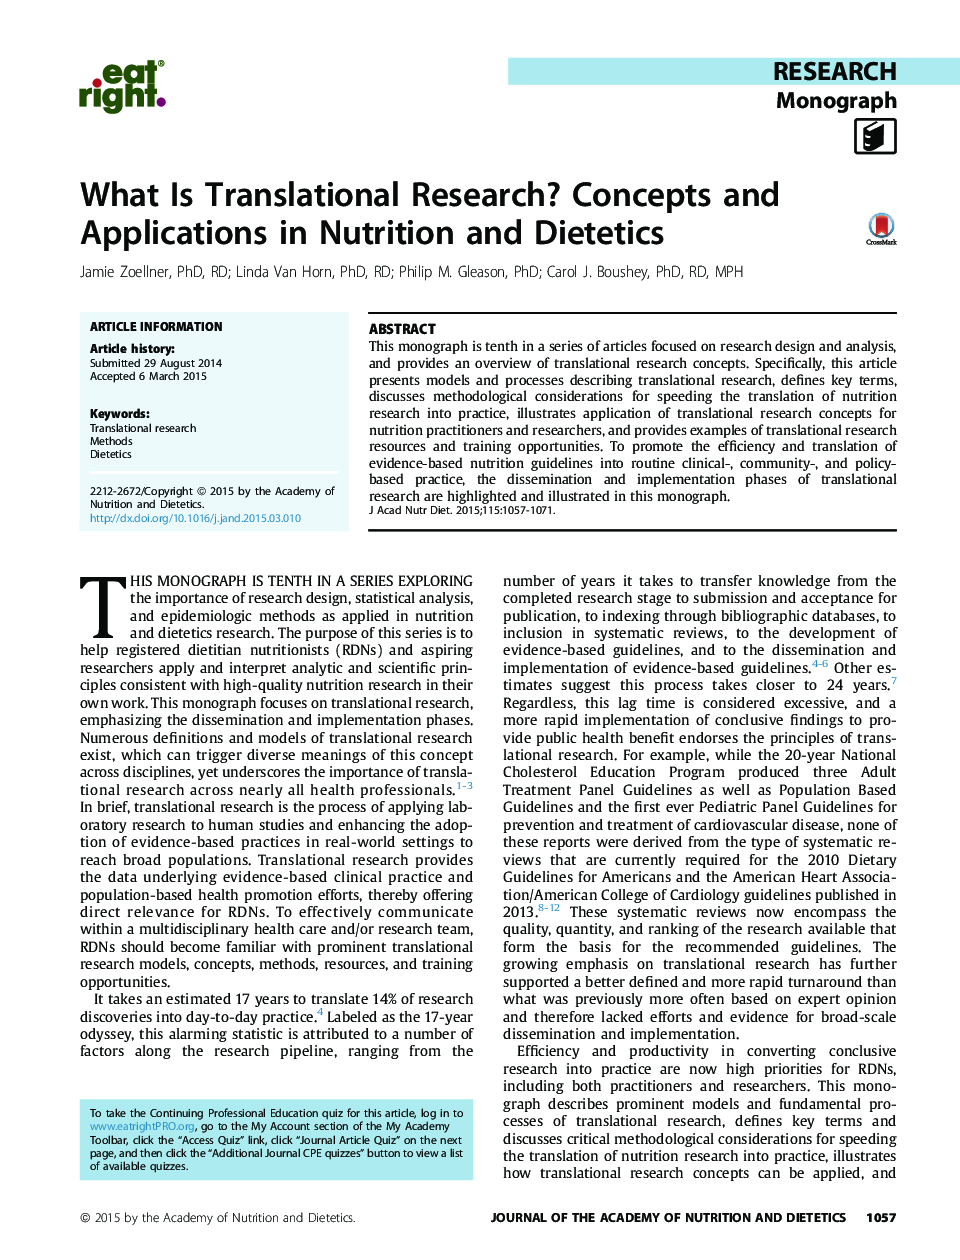 تحقیقات ترجمه ای چیست؟ مفاهیم و برنامه های کاربردی در تغذیه و رژیم غذایی